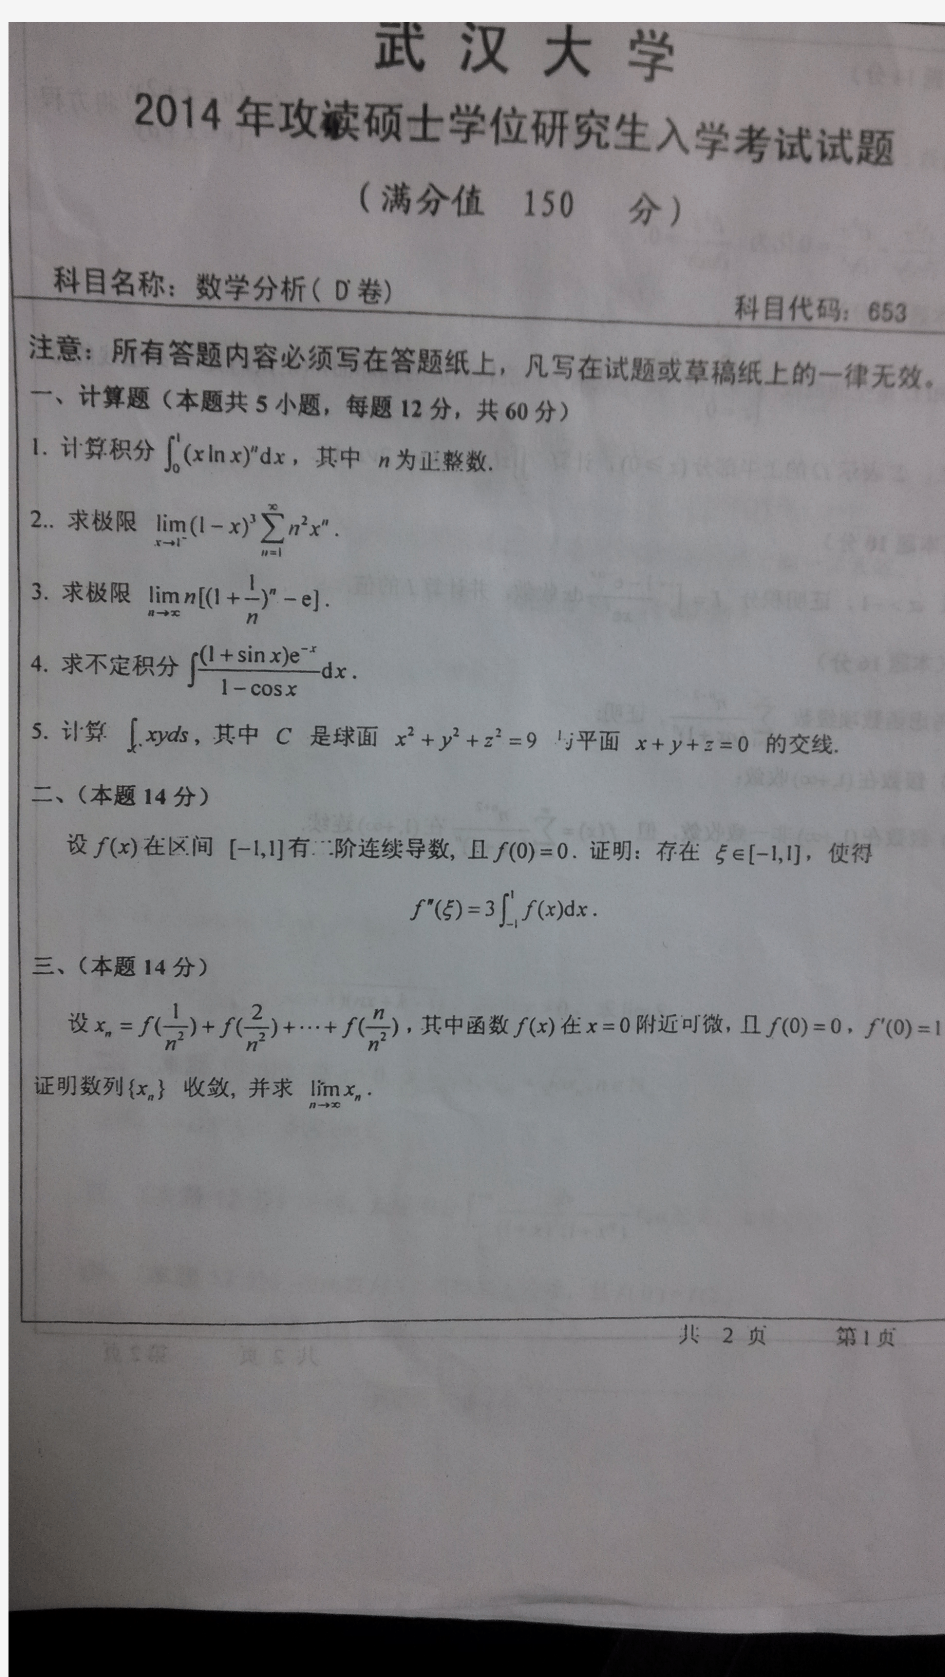 2014年武汉大学数学与统计学院考研数学分析试题